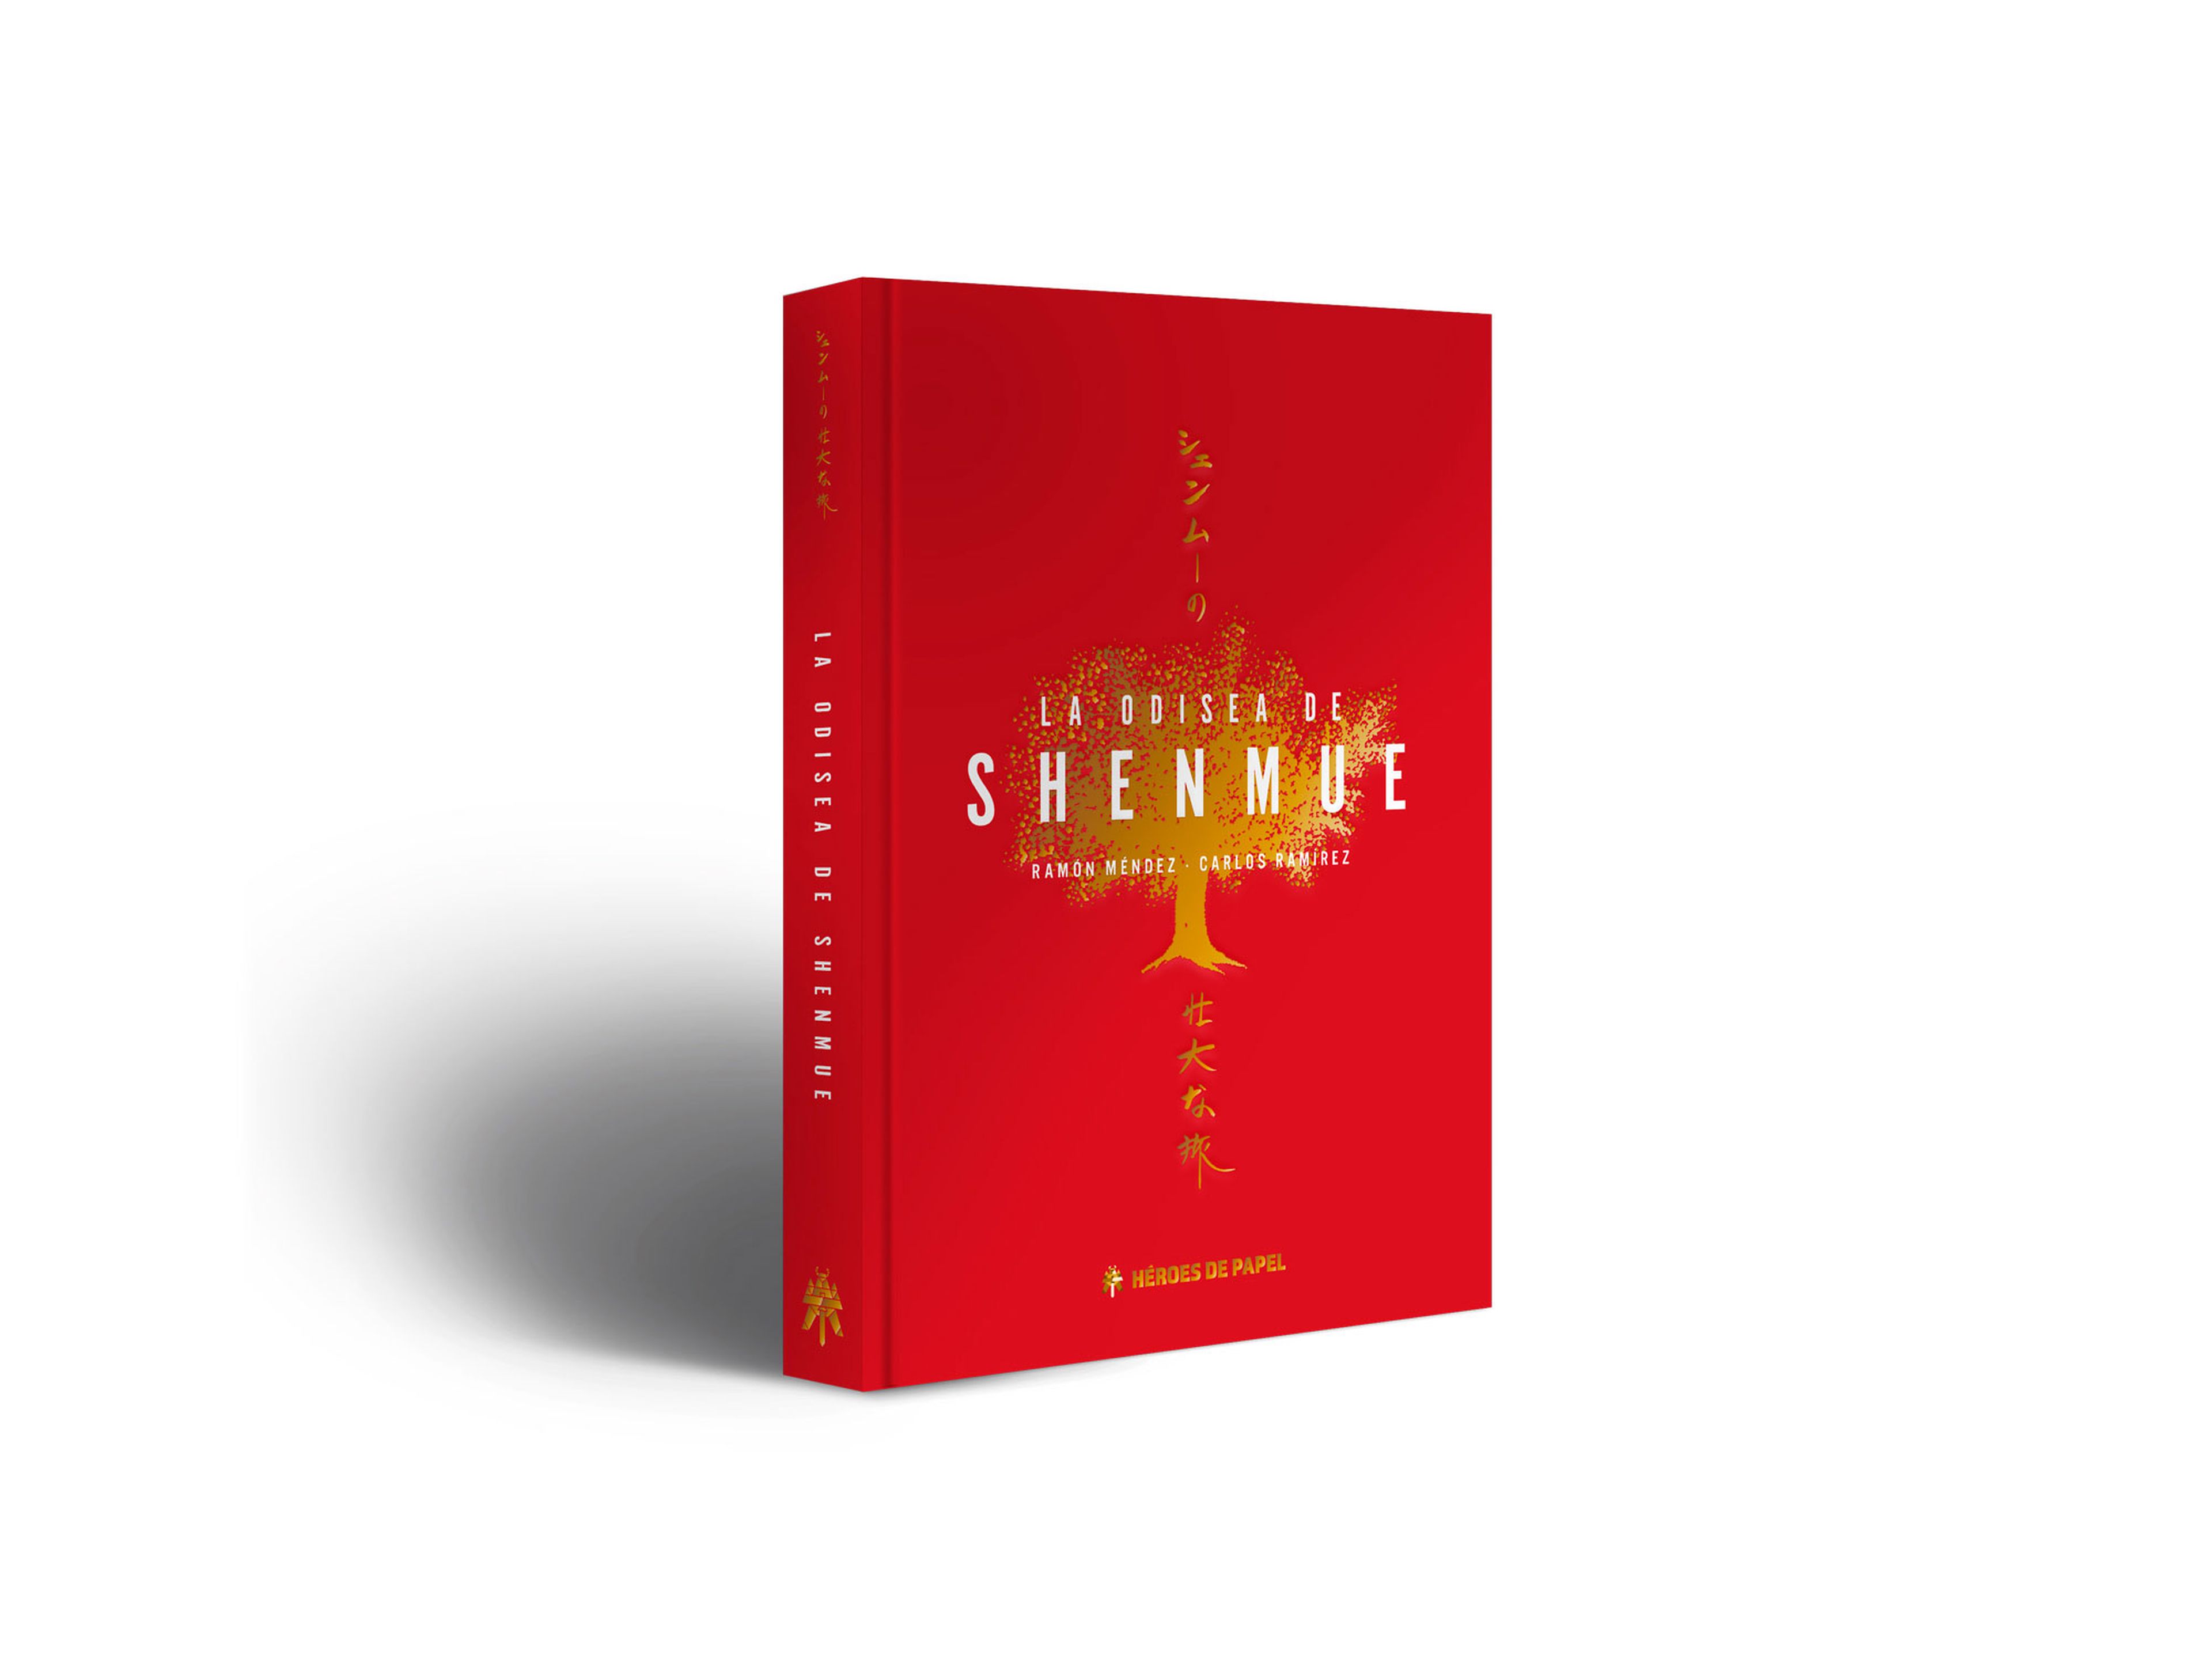 La edición limitada de La Odisea de Shenmue tiene un stock disponible de 500 ejemplares.